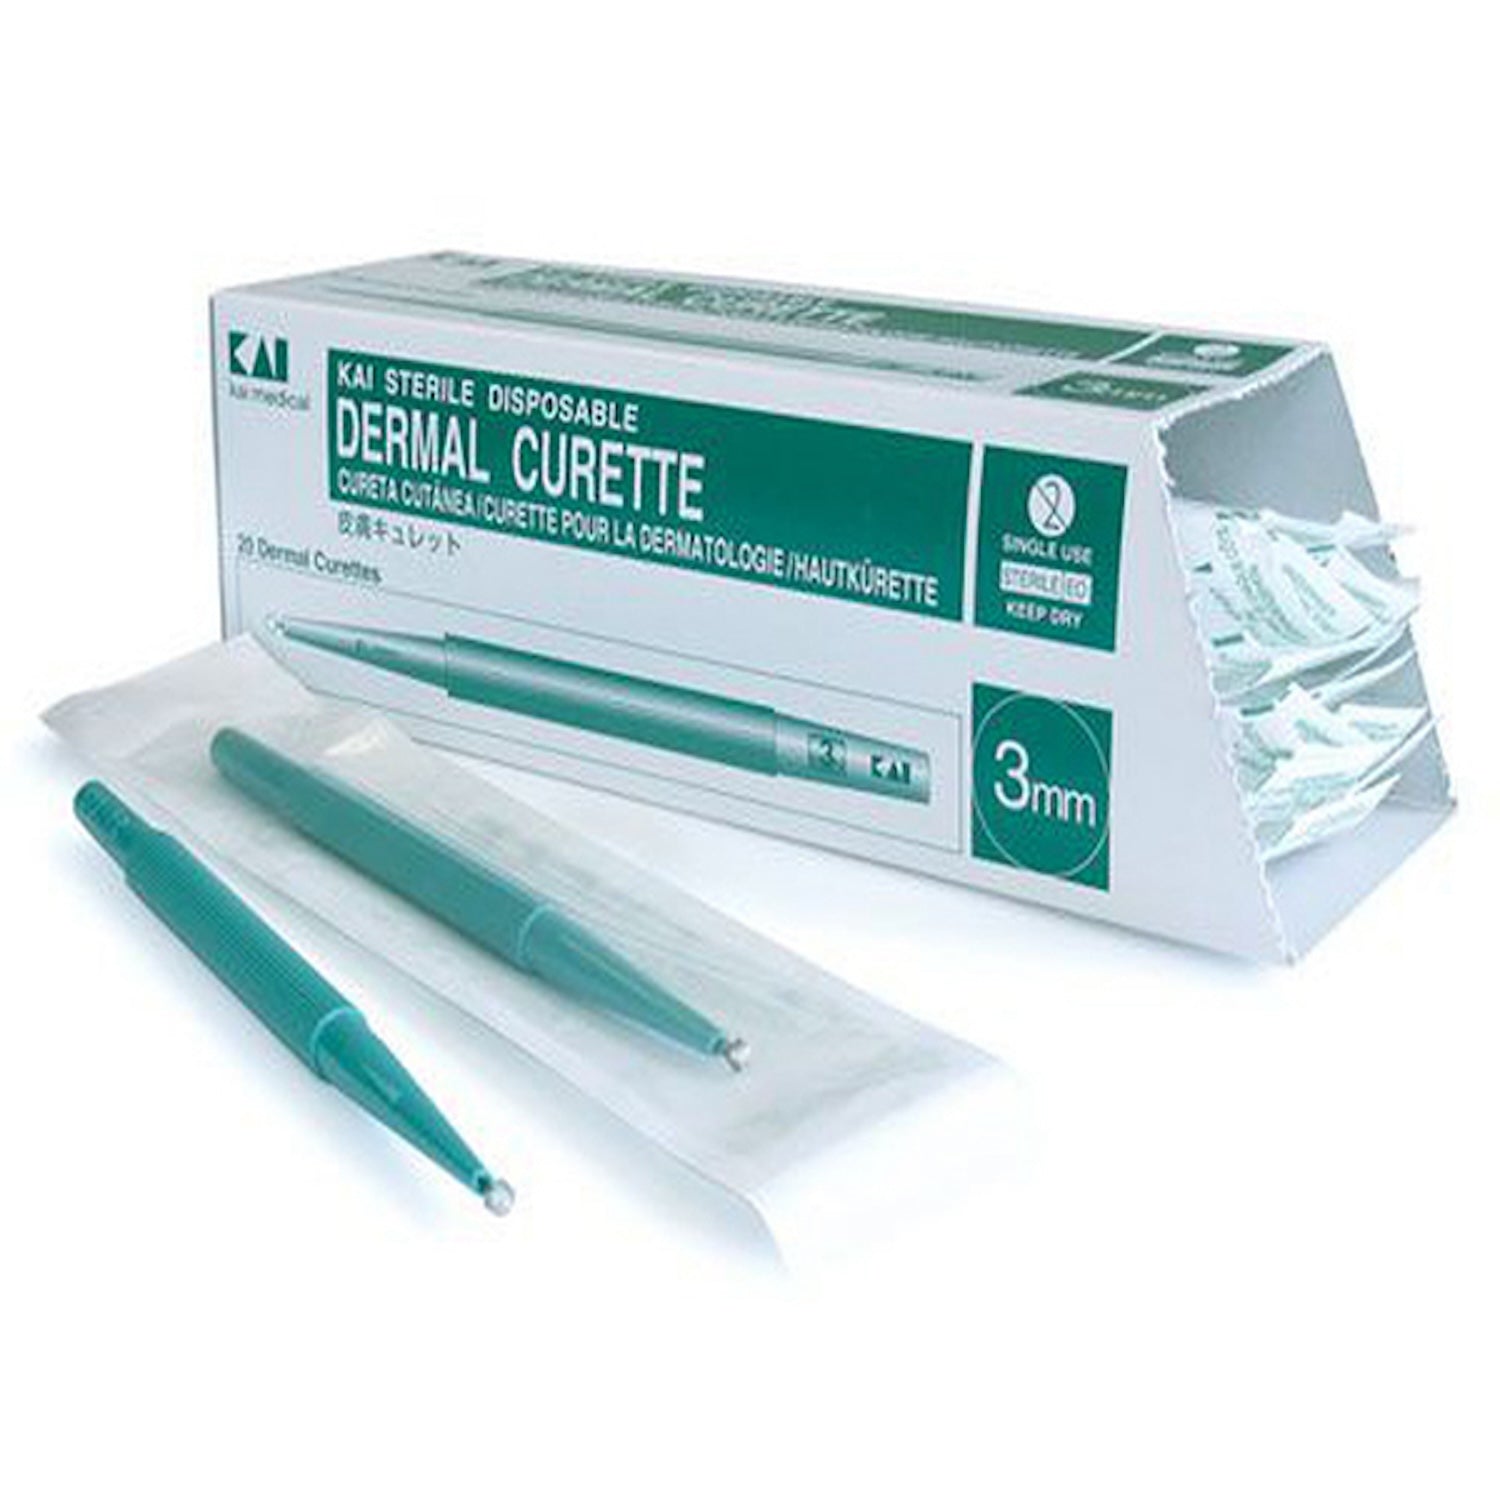 Kai Disposable Dermal Curettes | 2mm | Pack of 20 (1)